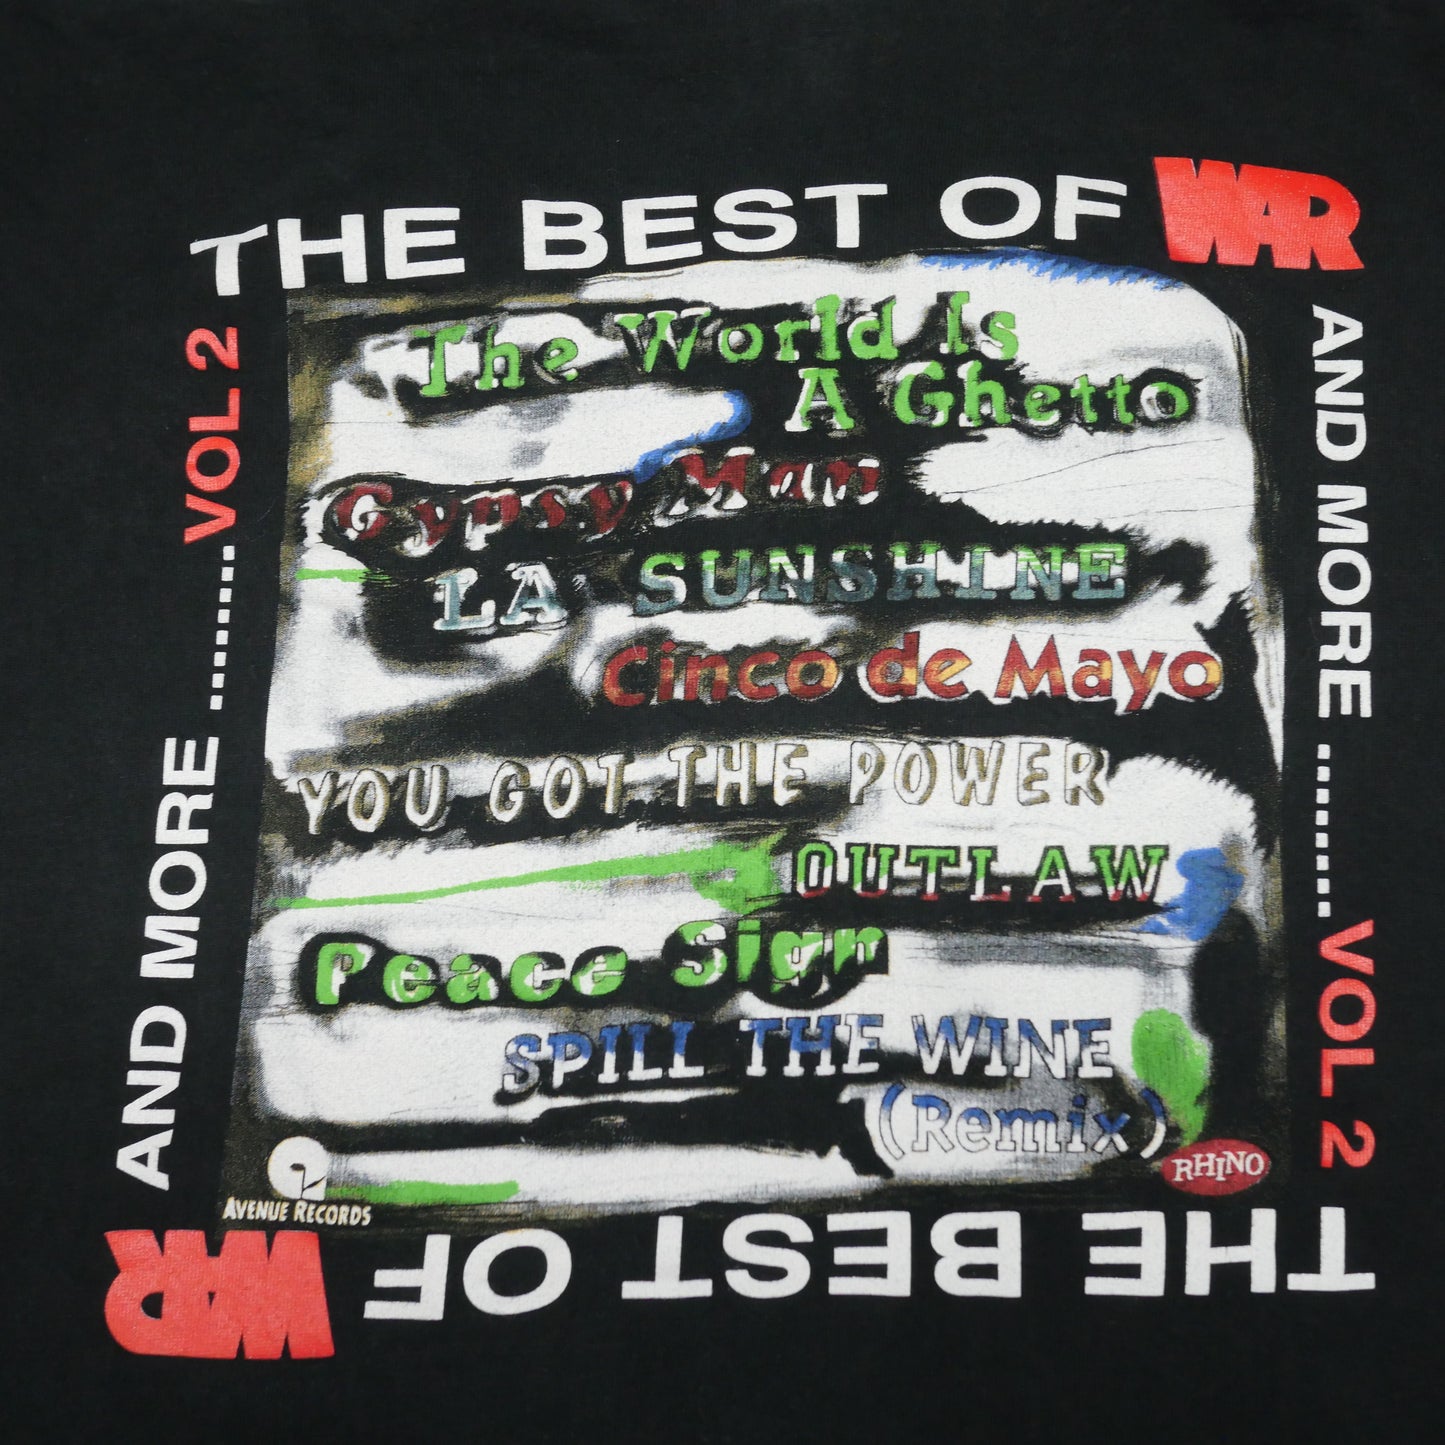 The Best Of War Vol 2 Shirt - Medium